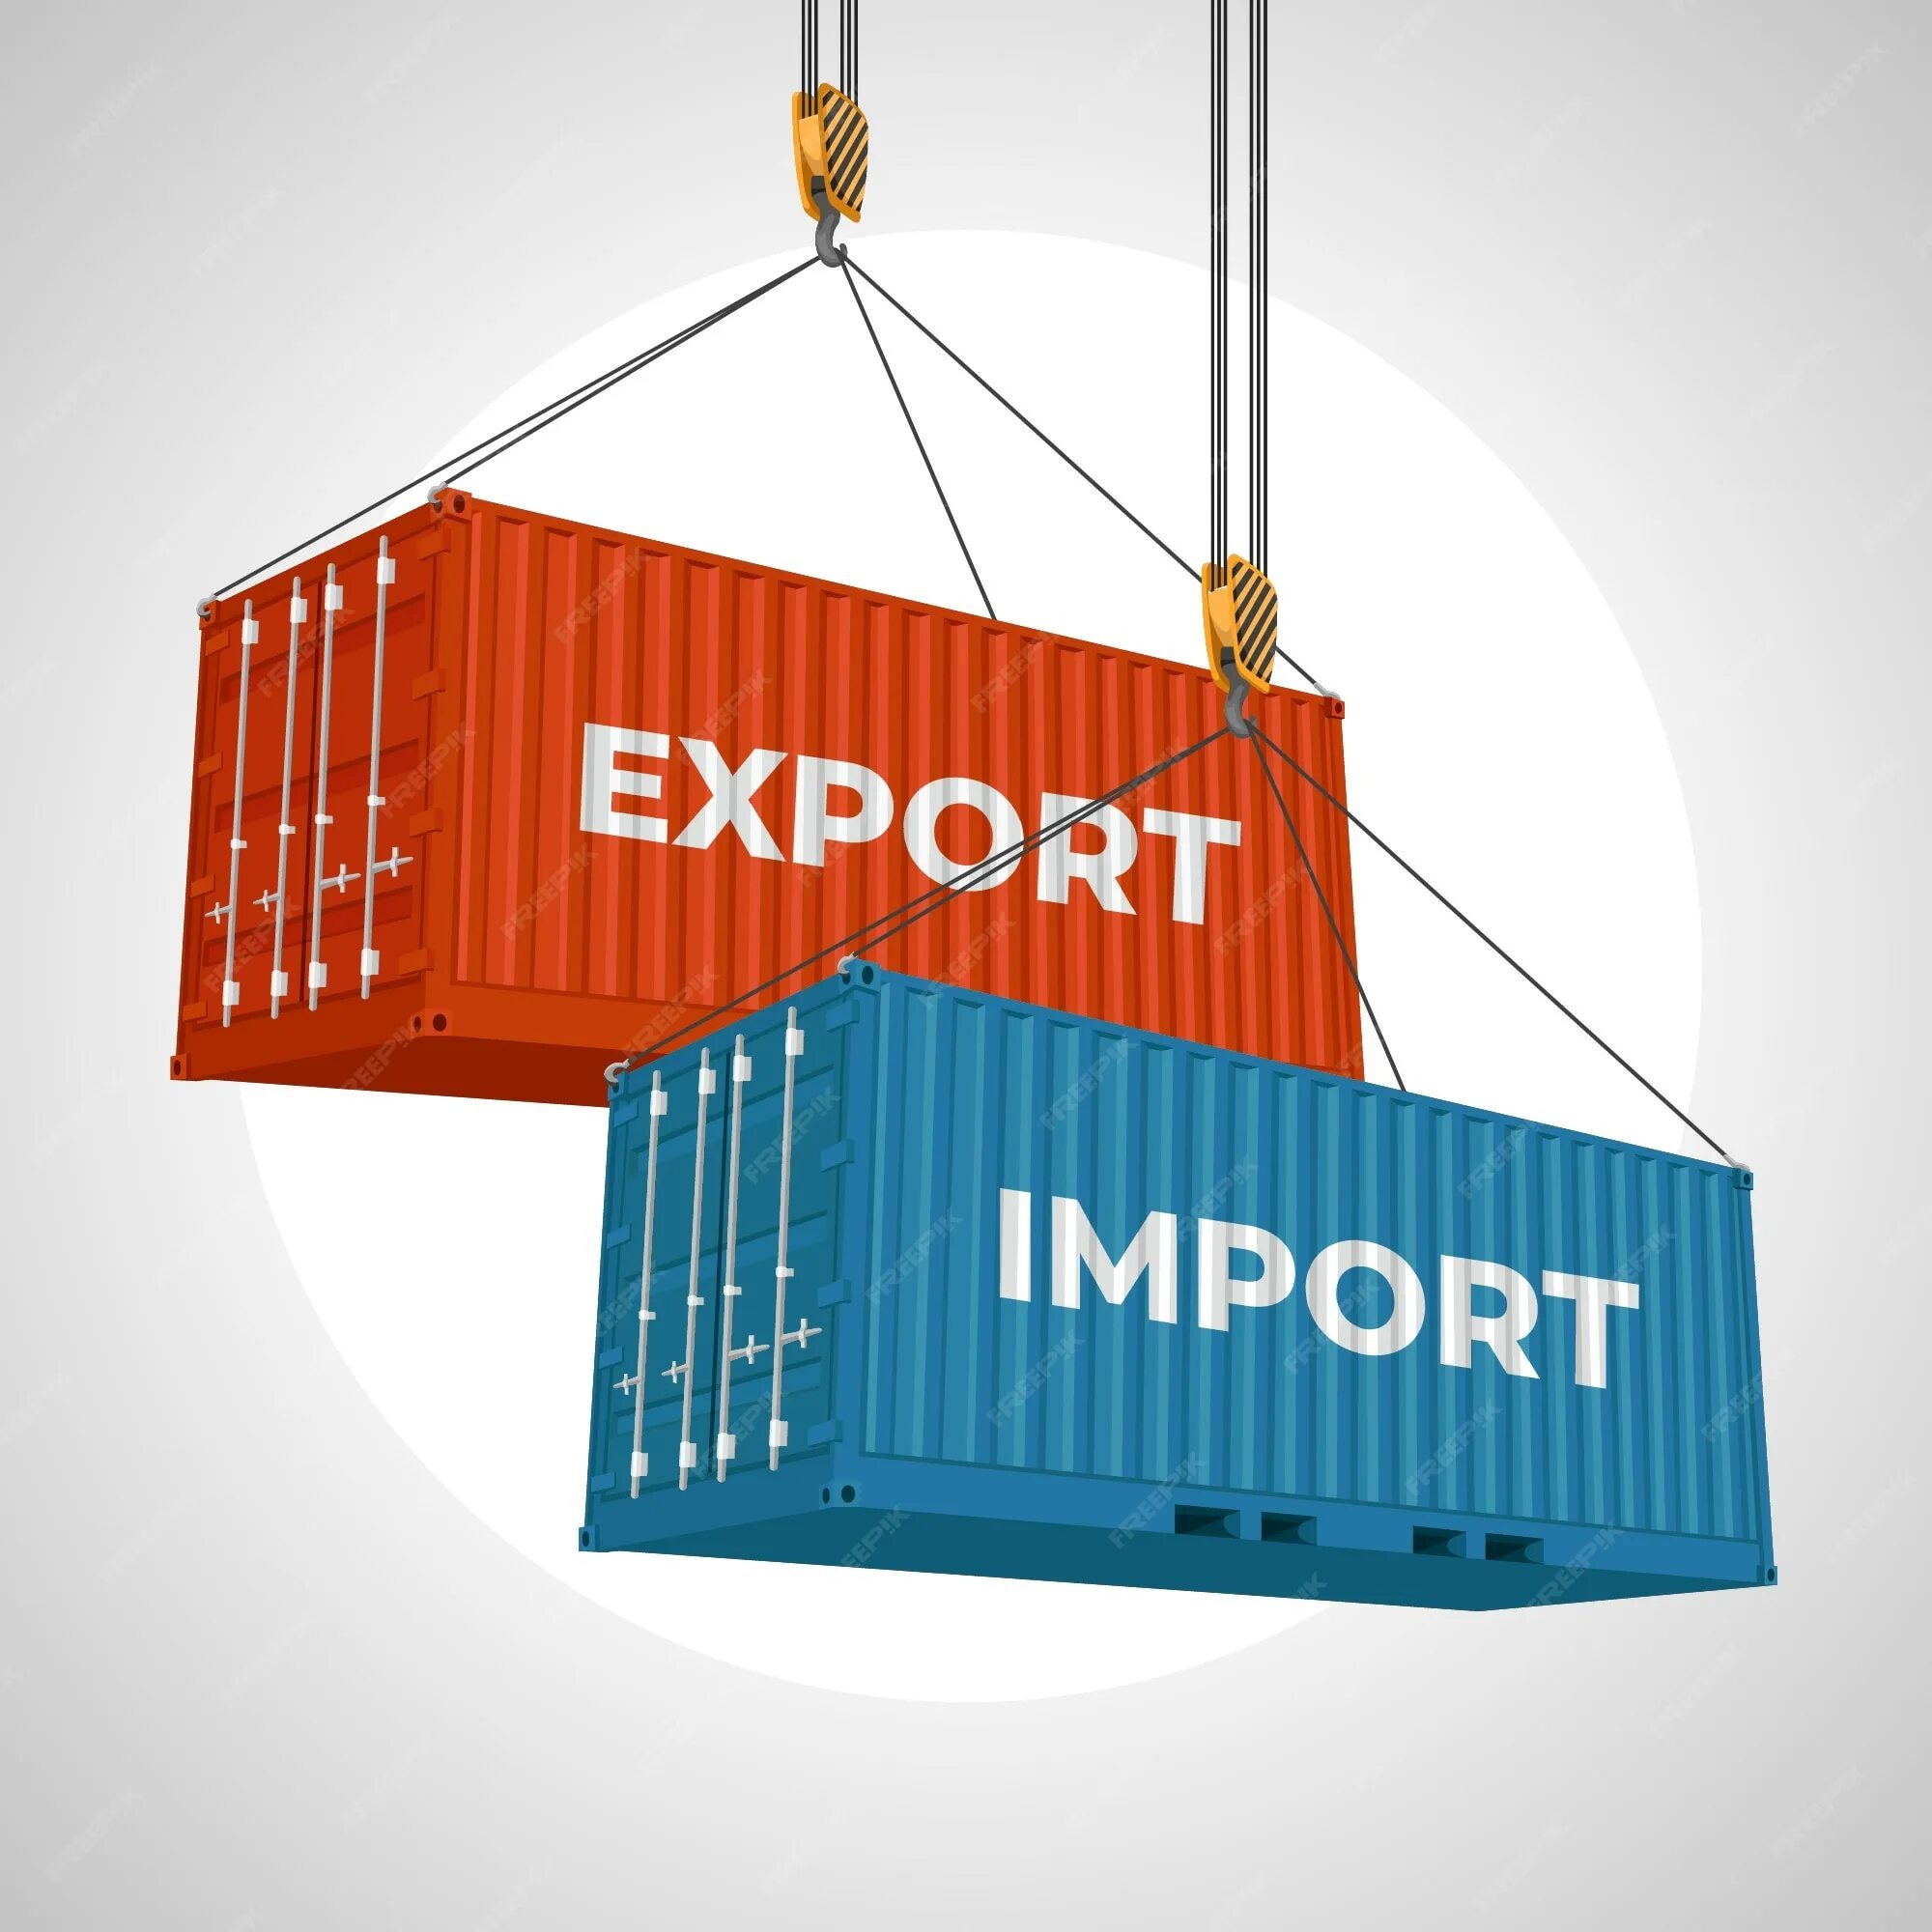 Экспорт и импорт. Экспорт товаров. Импорт иллюстрация. Экспорт и импорт картинки.